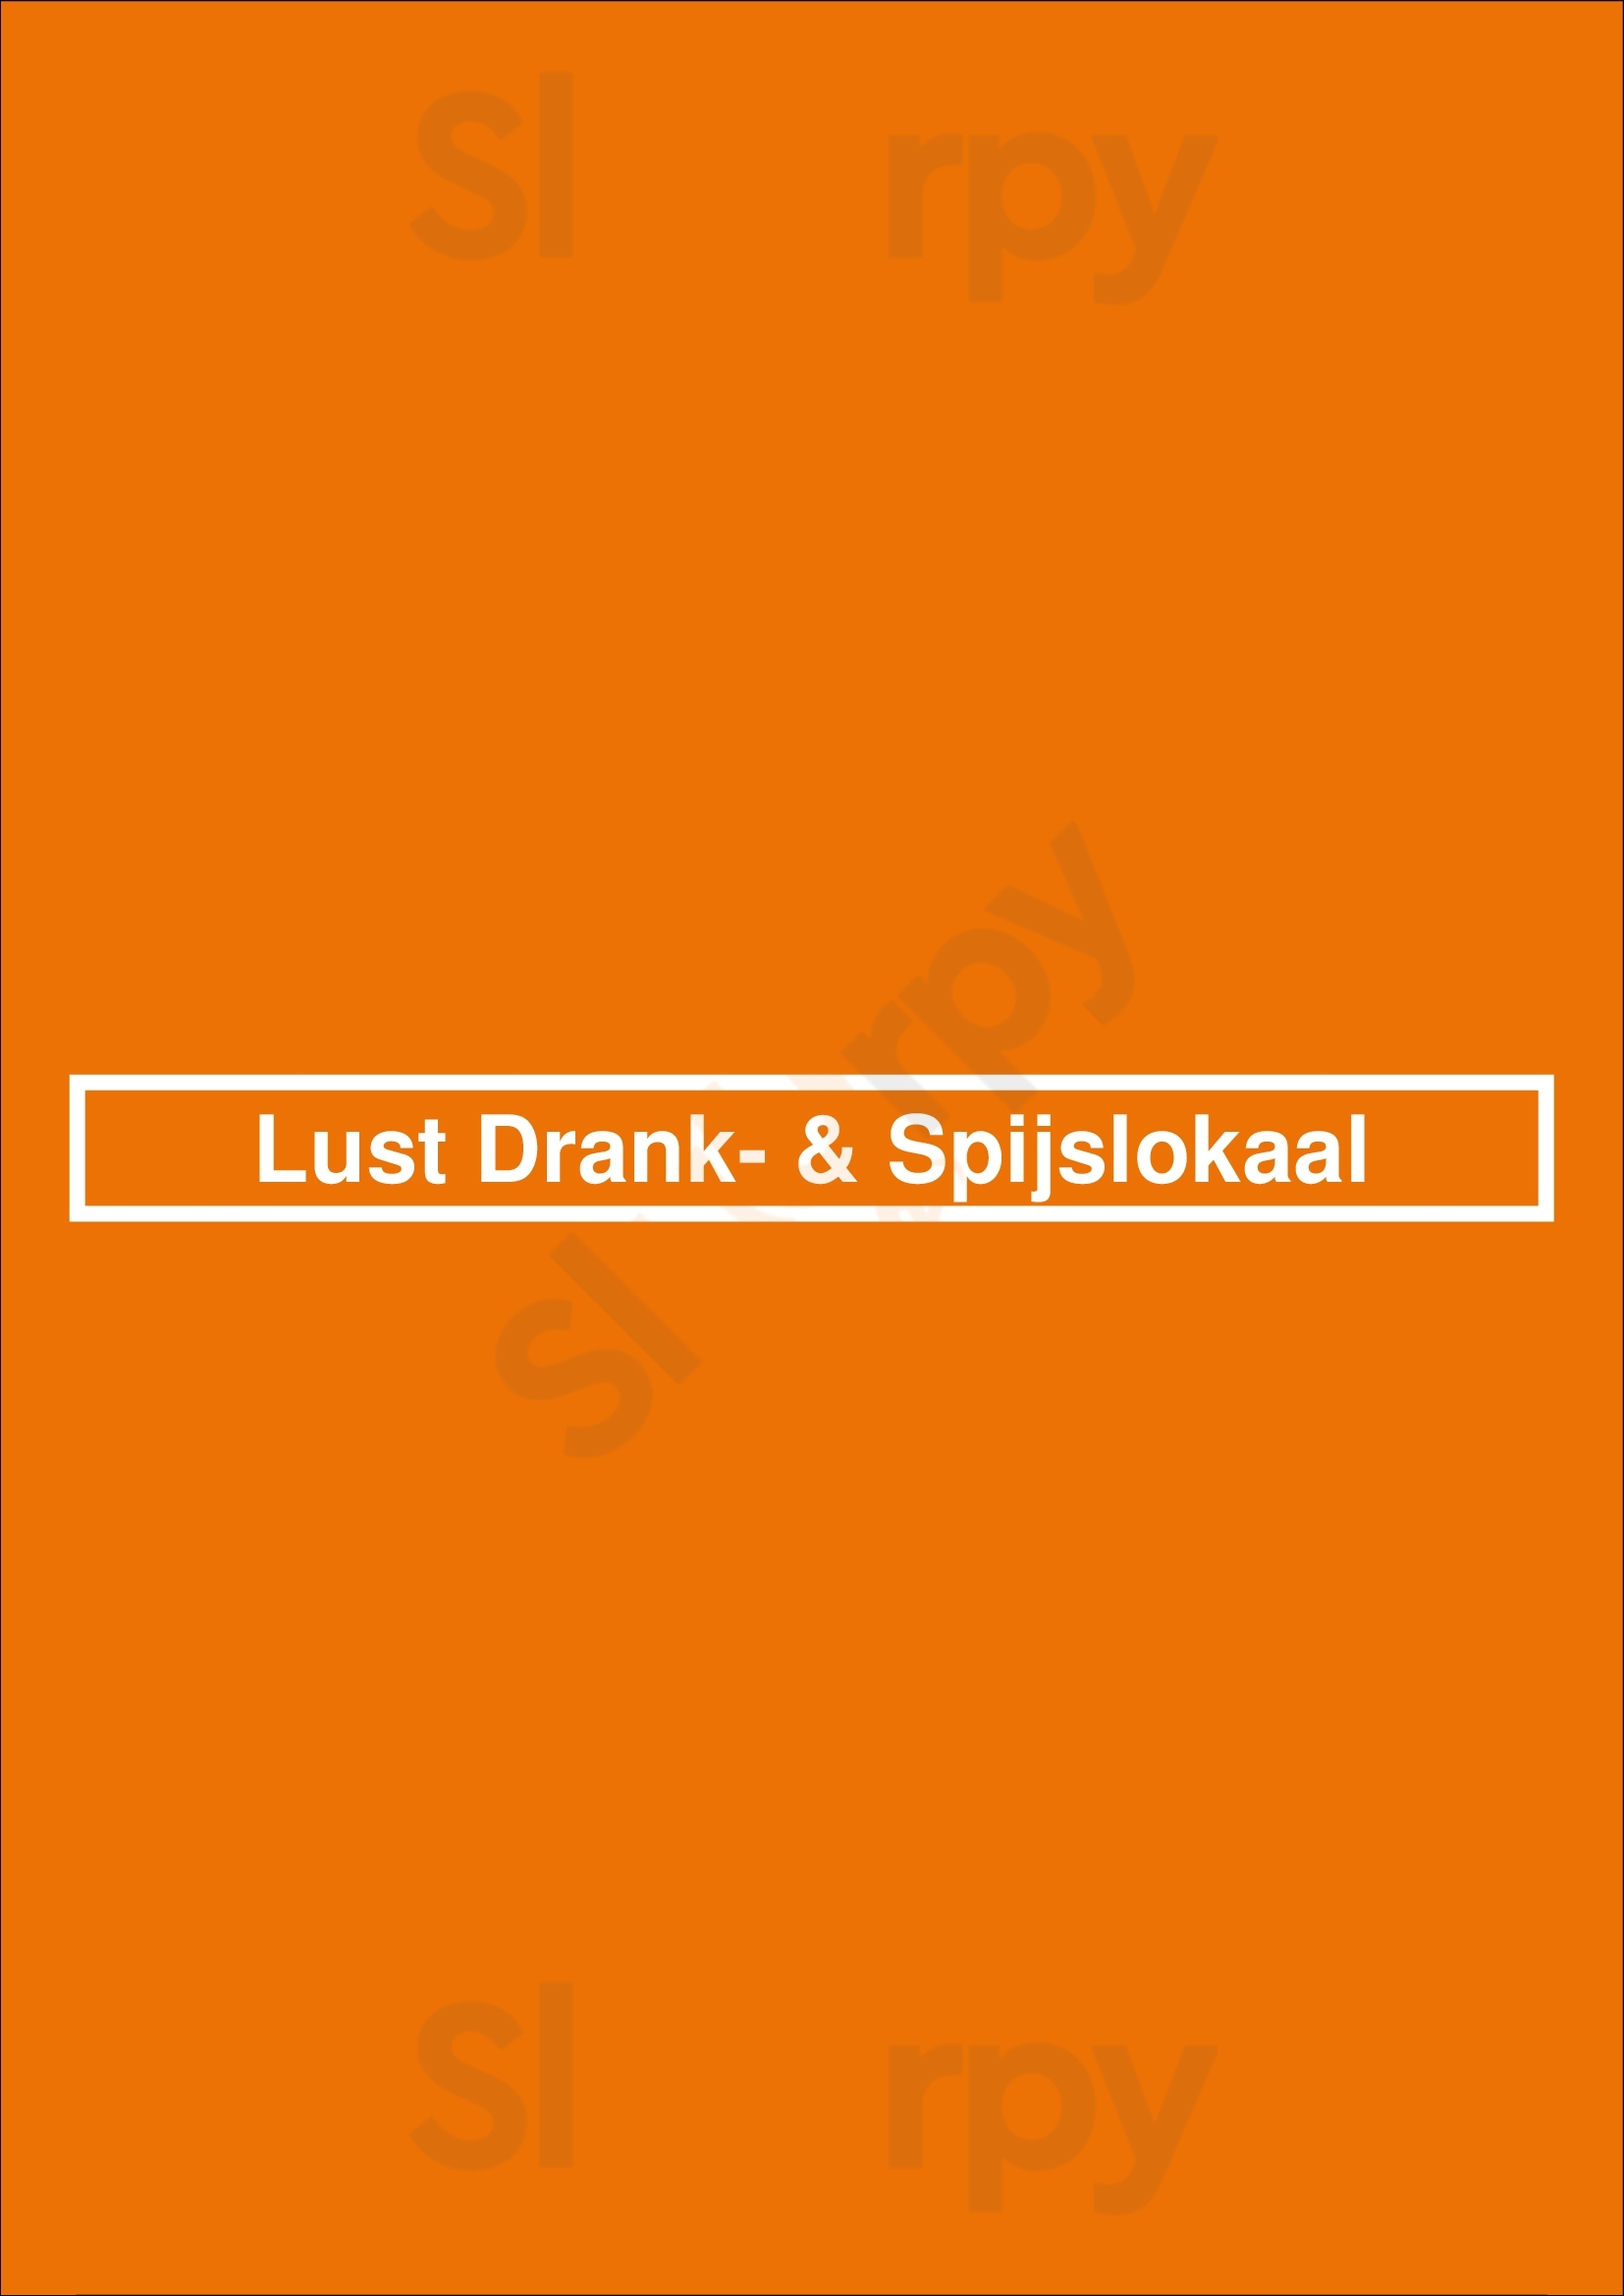 Lust Drank- & Spijslokaal Rotterdam Menu - 1